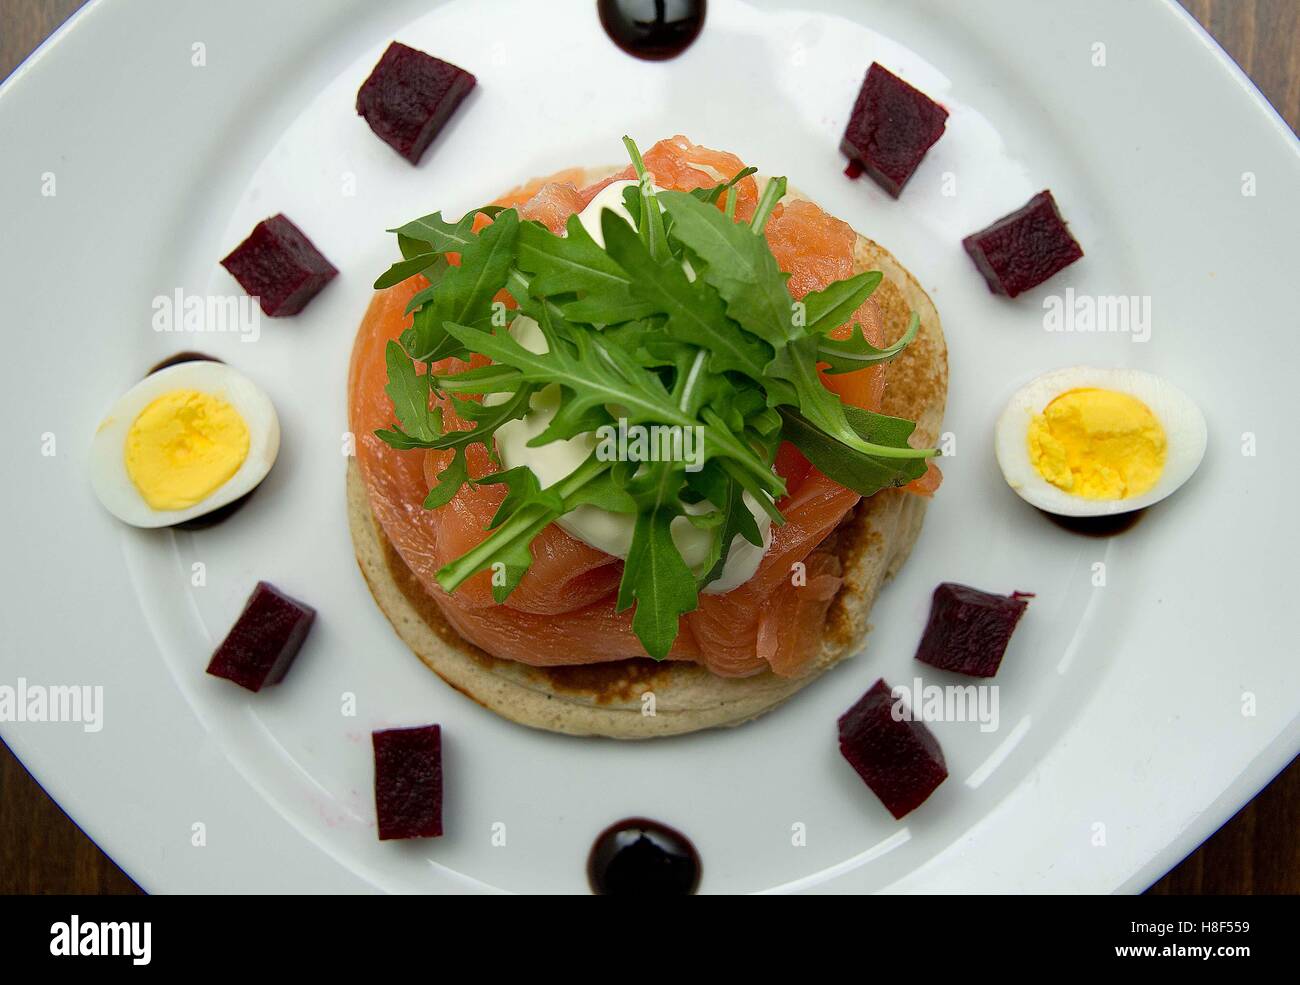 Salmone affumicato con uovo in camicia su un tostato muffin inglese. un Regno Unito prima colazione pranzo snack pasto cibo Foto Stock